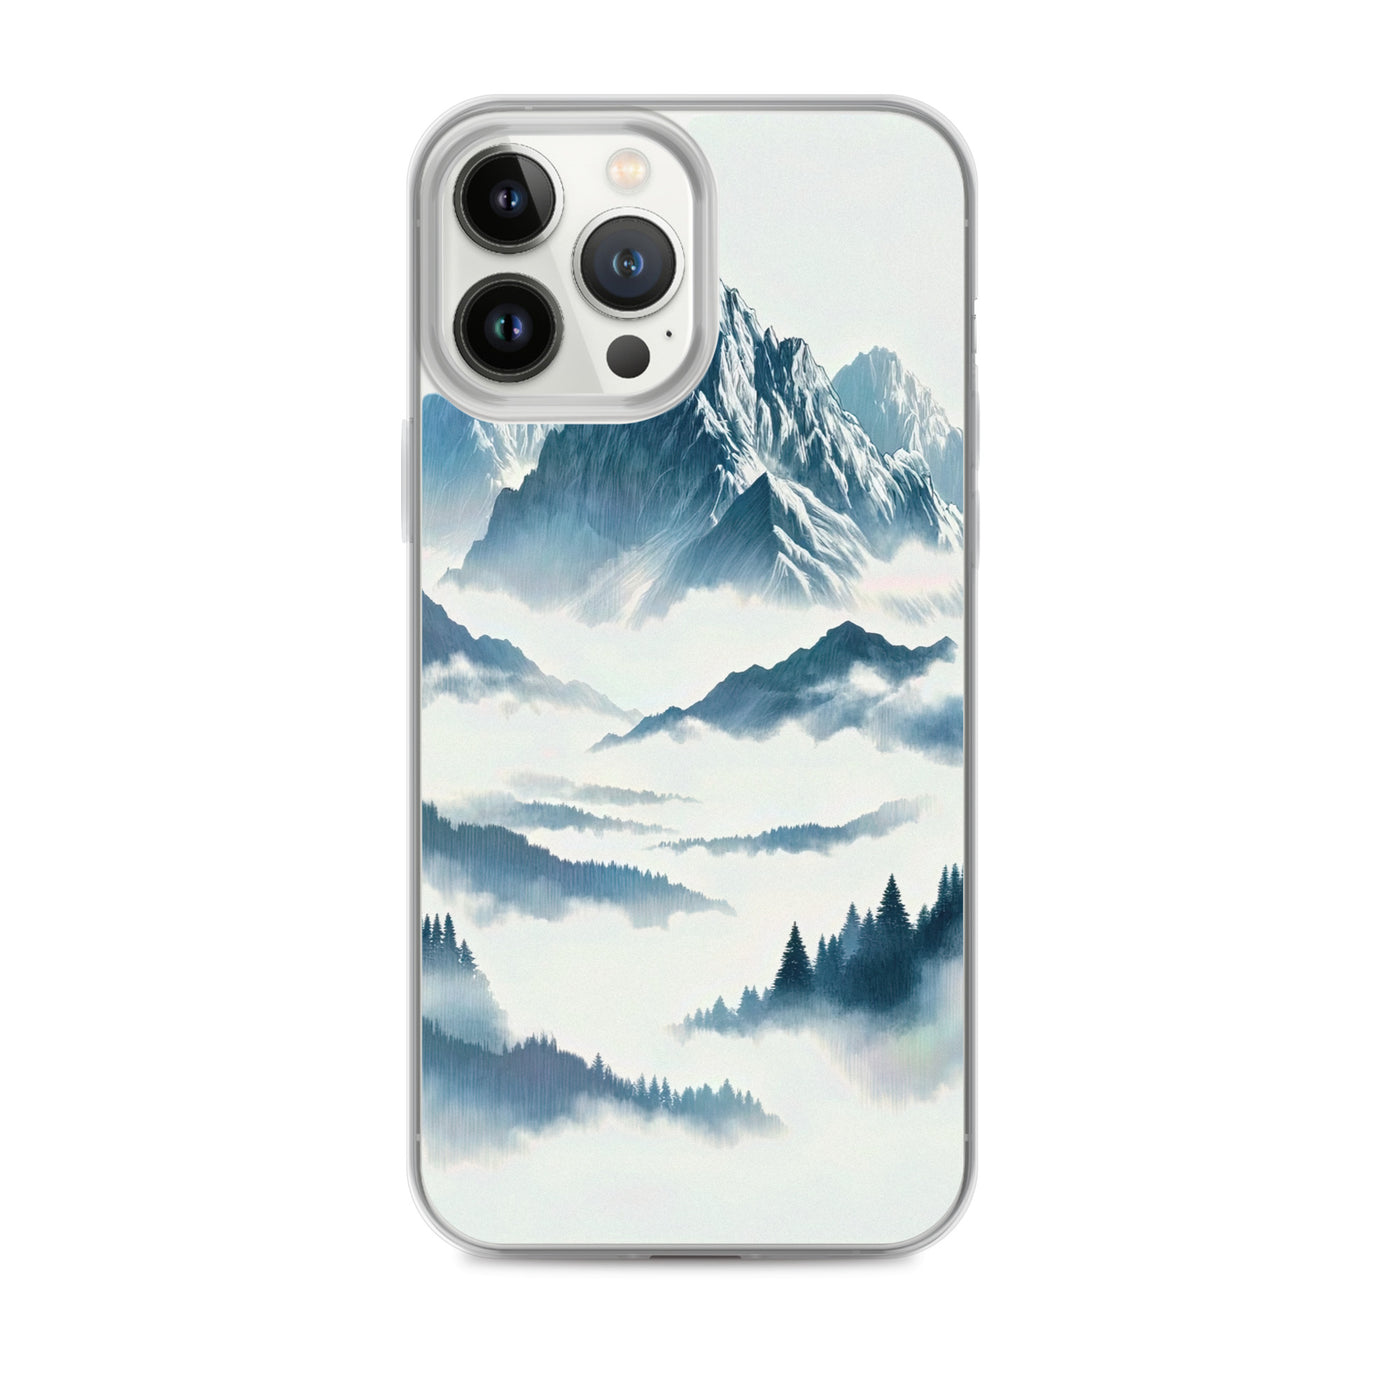 Nebeliger Alpenmorgen-Essenz, verdeckte Täler und Wälder - iPhone Schutzhülle (durchsichtig) berge xxx yyy zzz iPhone 13 Pro Max